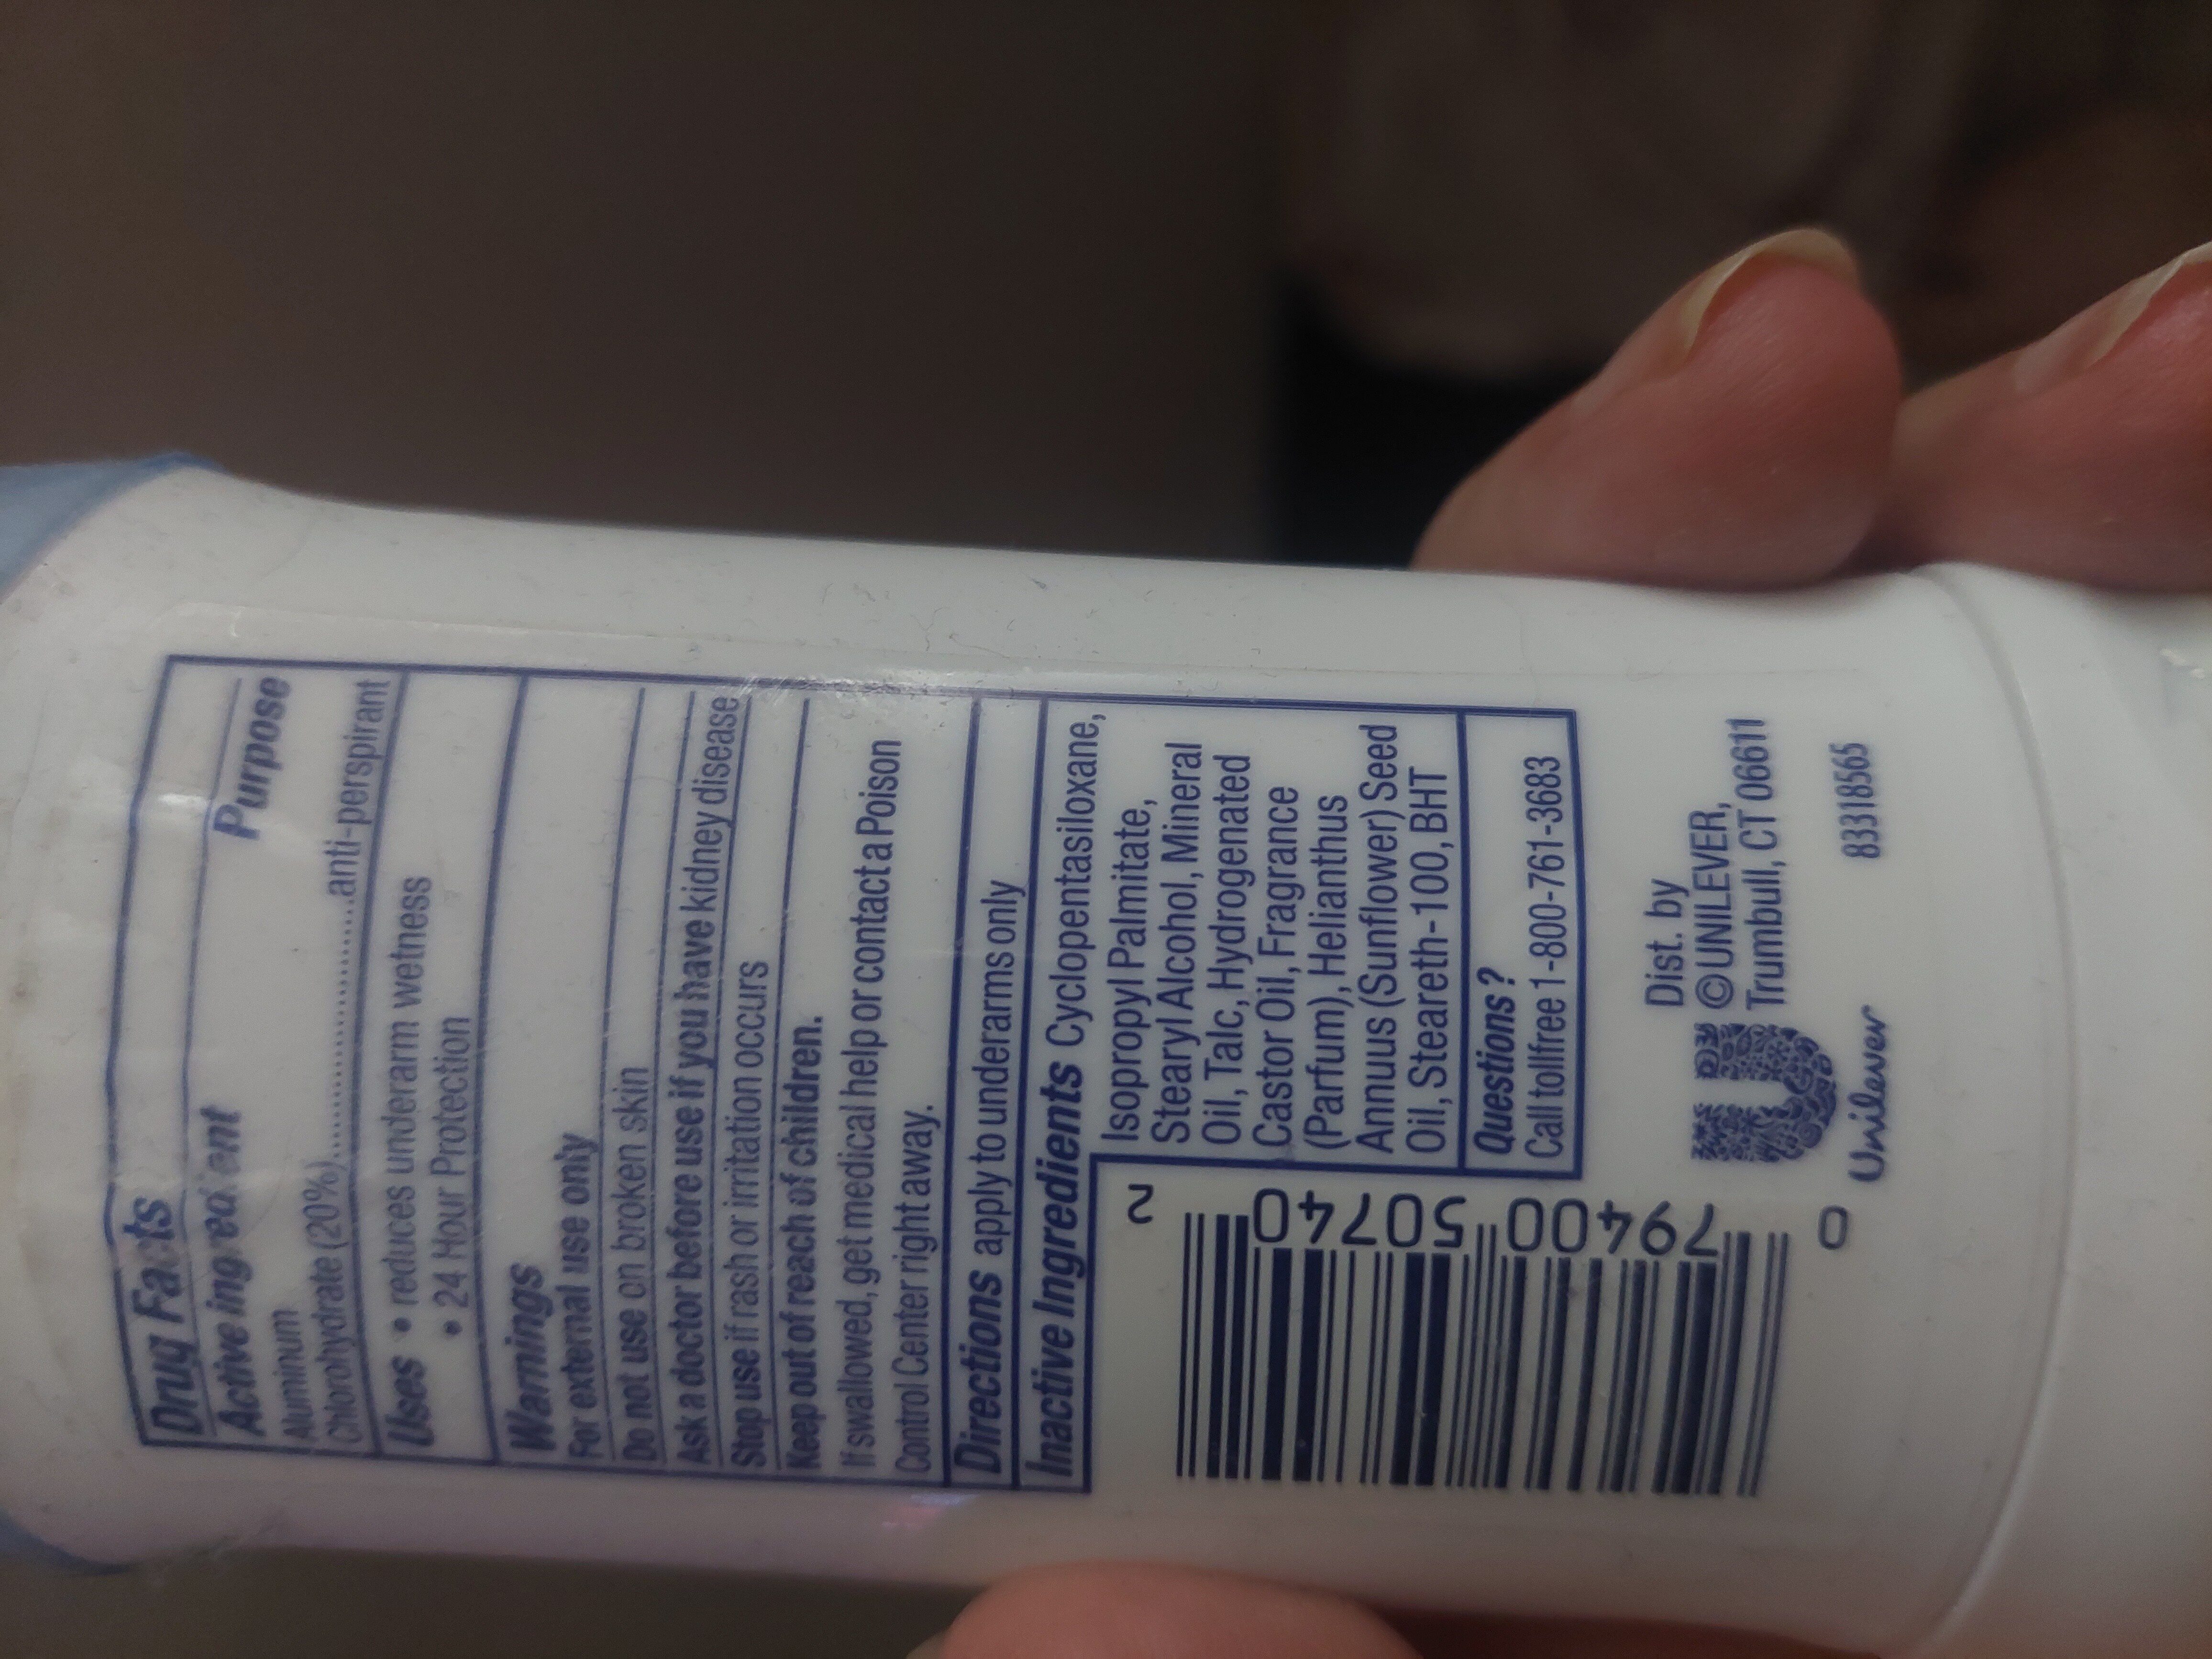 dove sensitive deodorant - Ingredients - en